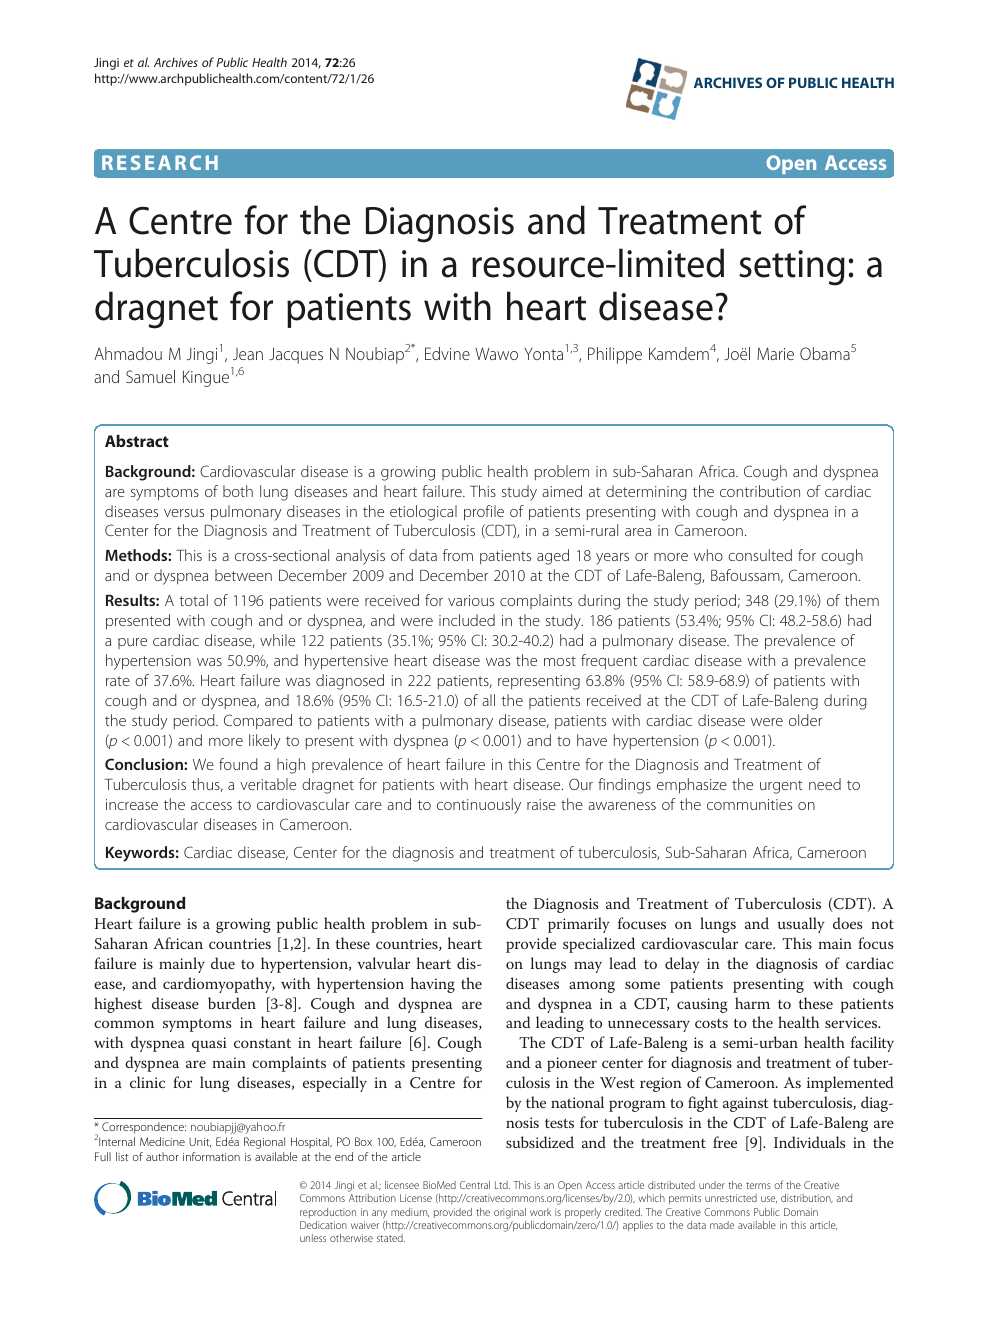 tuberculosis research paper pdf